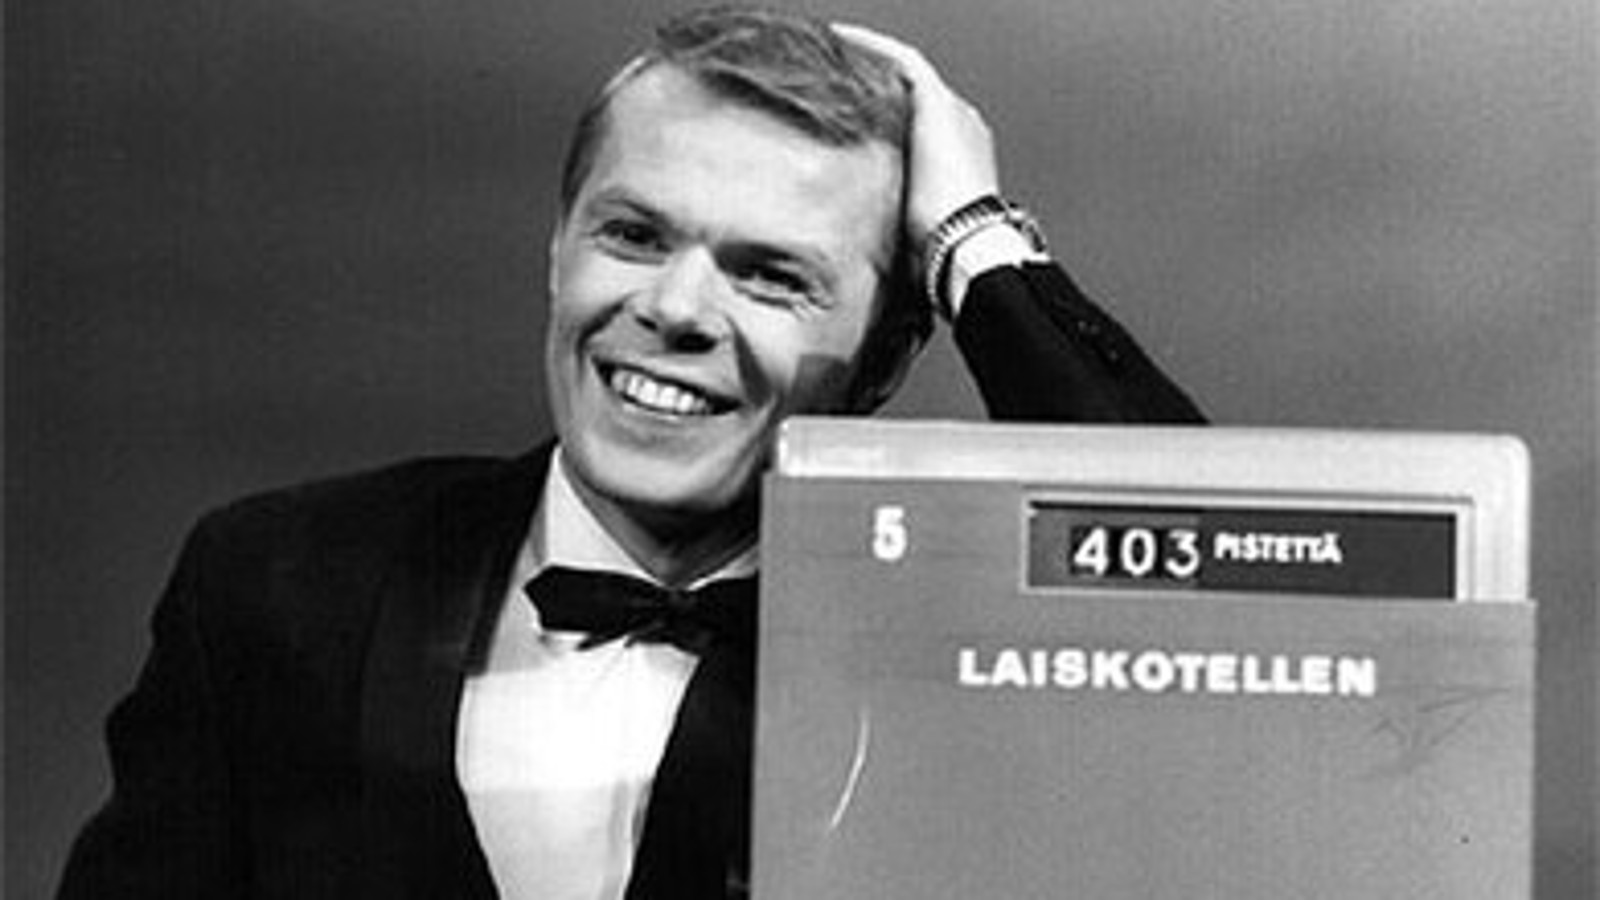 Kuvassa on Lasse Mårtenson mustassa takissa ja rusetissa puolivartalokuvassa. Han nojaa vasemmalla kädellään kassakoneeseen ja siinä näkyy teksti Laiskotellen ja 403 pistettä sekä numero 5.